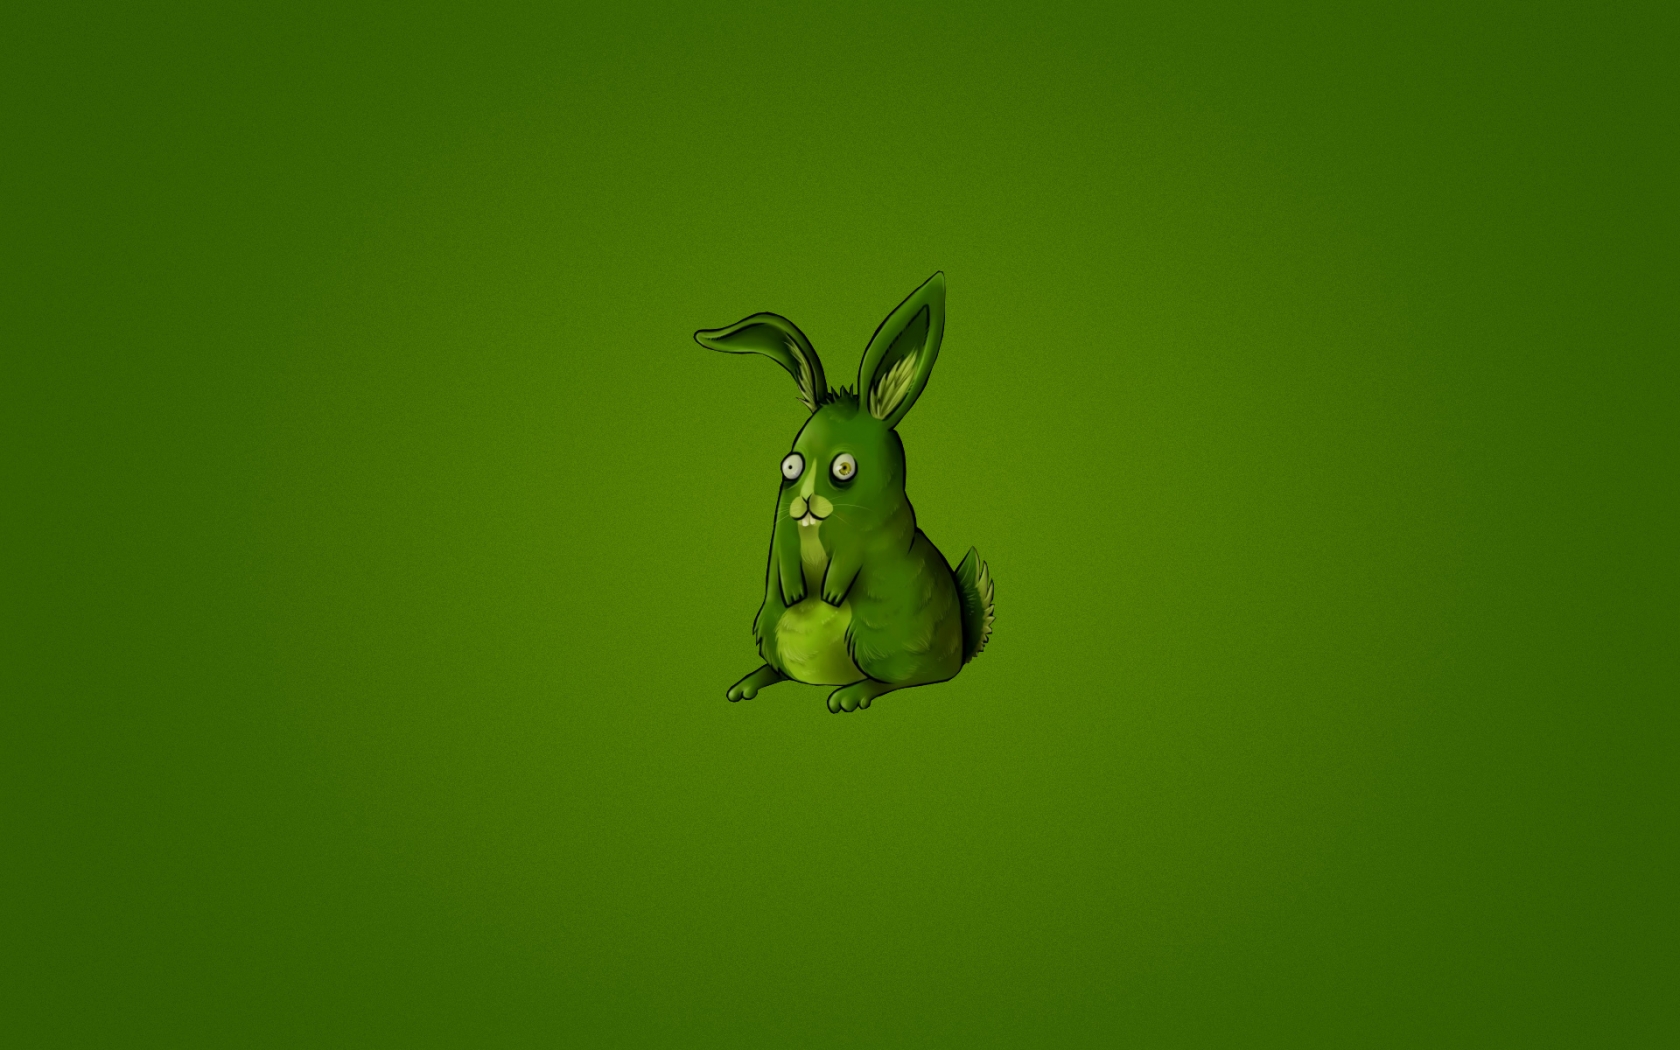 Cute Little Rabbit for 1680 x 1050 widescreen resolution